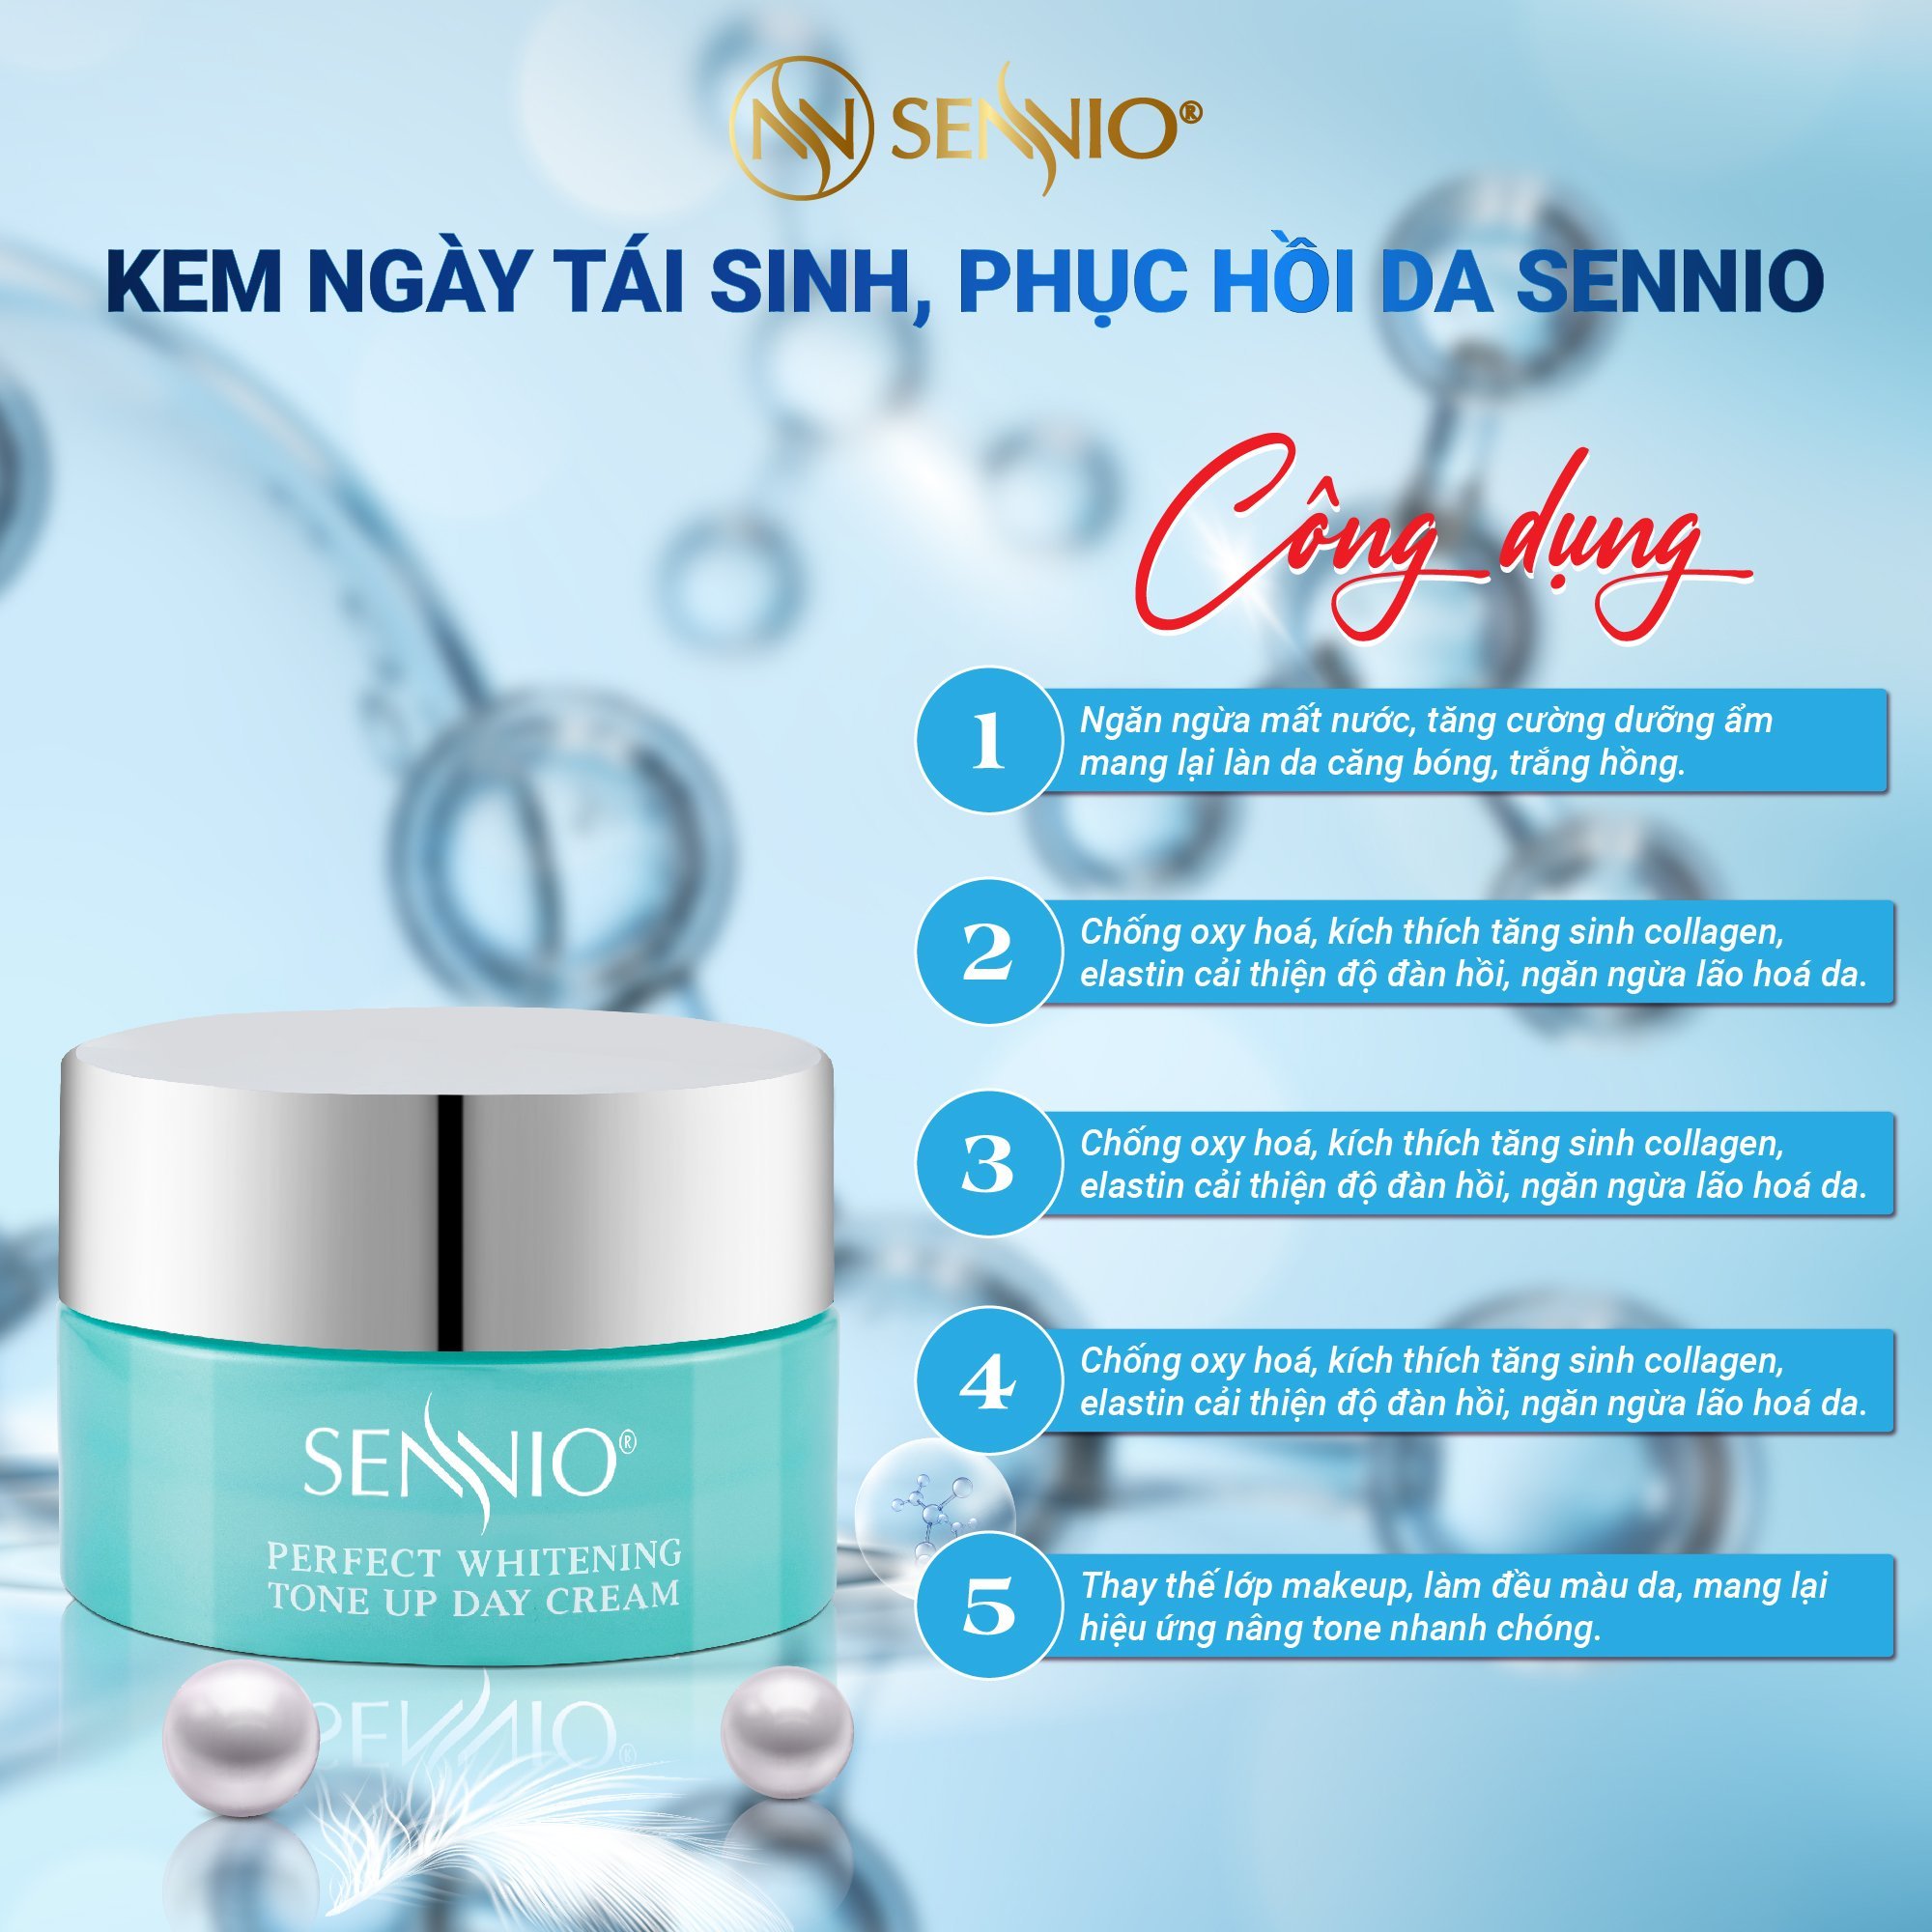 Bộ 6 sản phẩm tái sinh phục hồi da căng bóng sennio khôi phục cấu trúc da - giảm nhăn - tăng sinh collagen Sennio - SNO 663-60